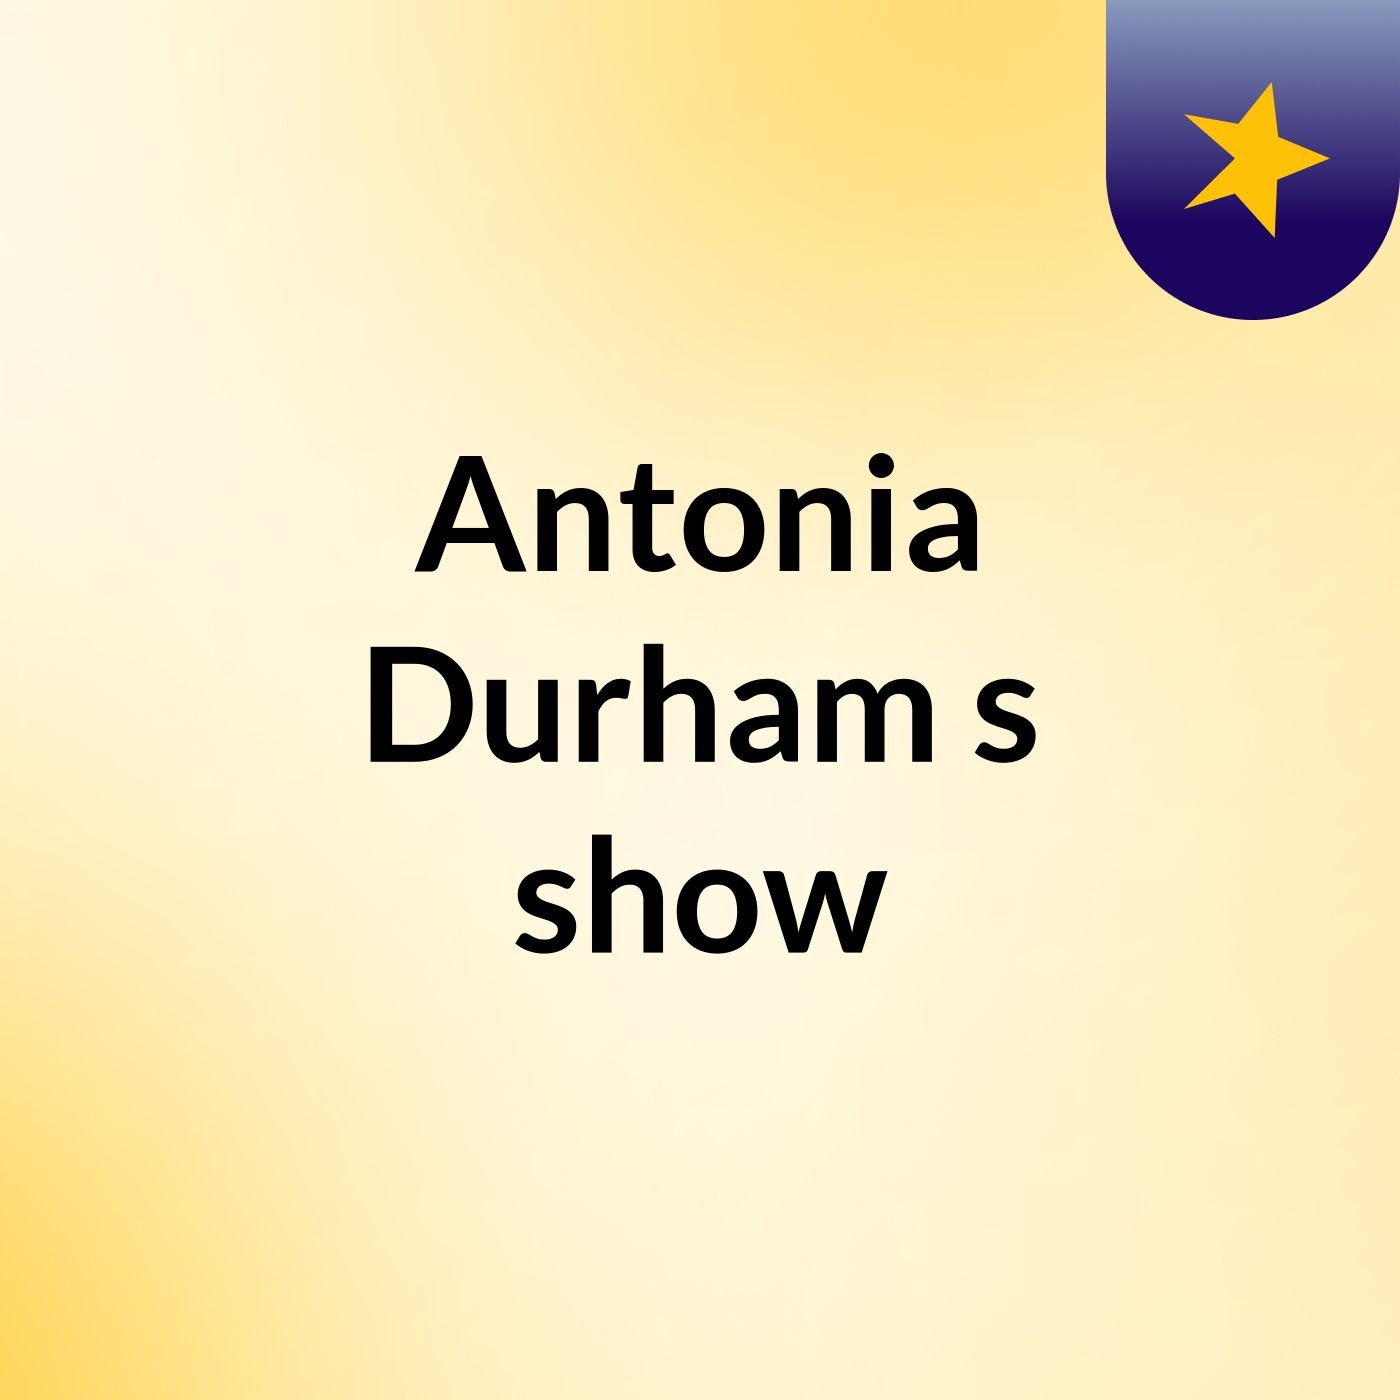 Antonia Durham's show